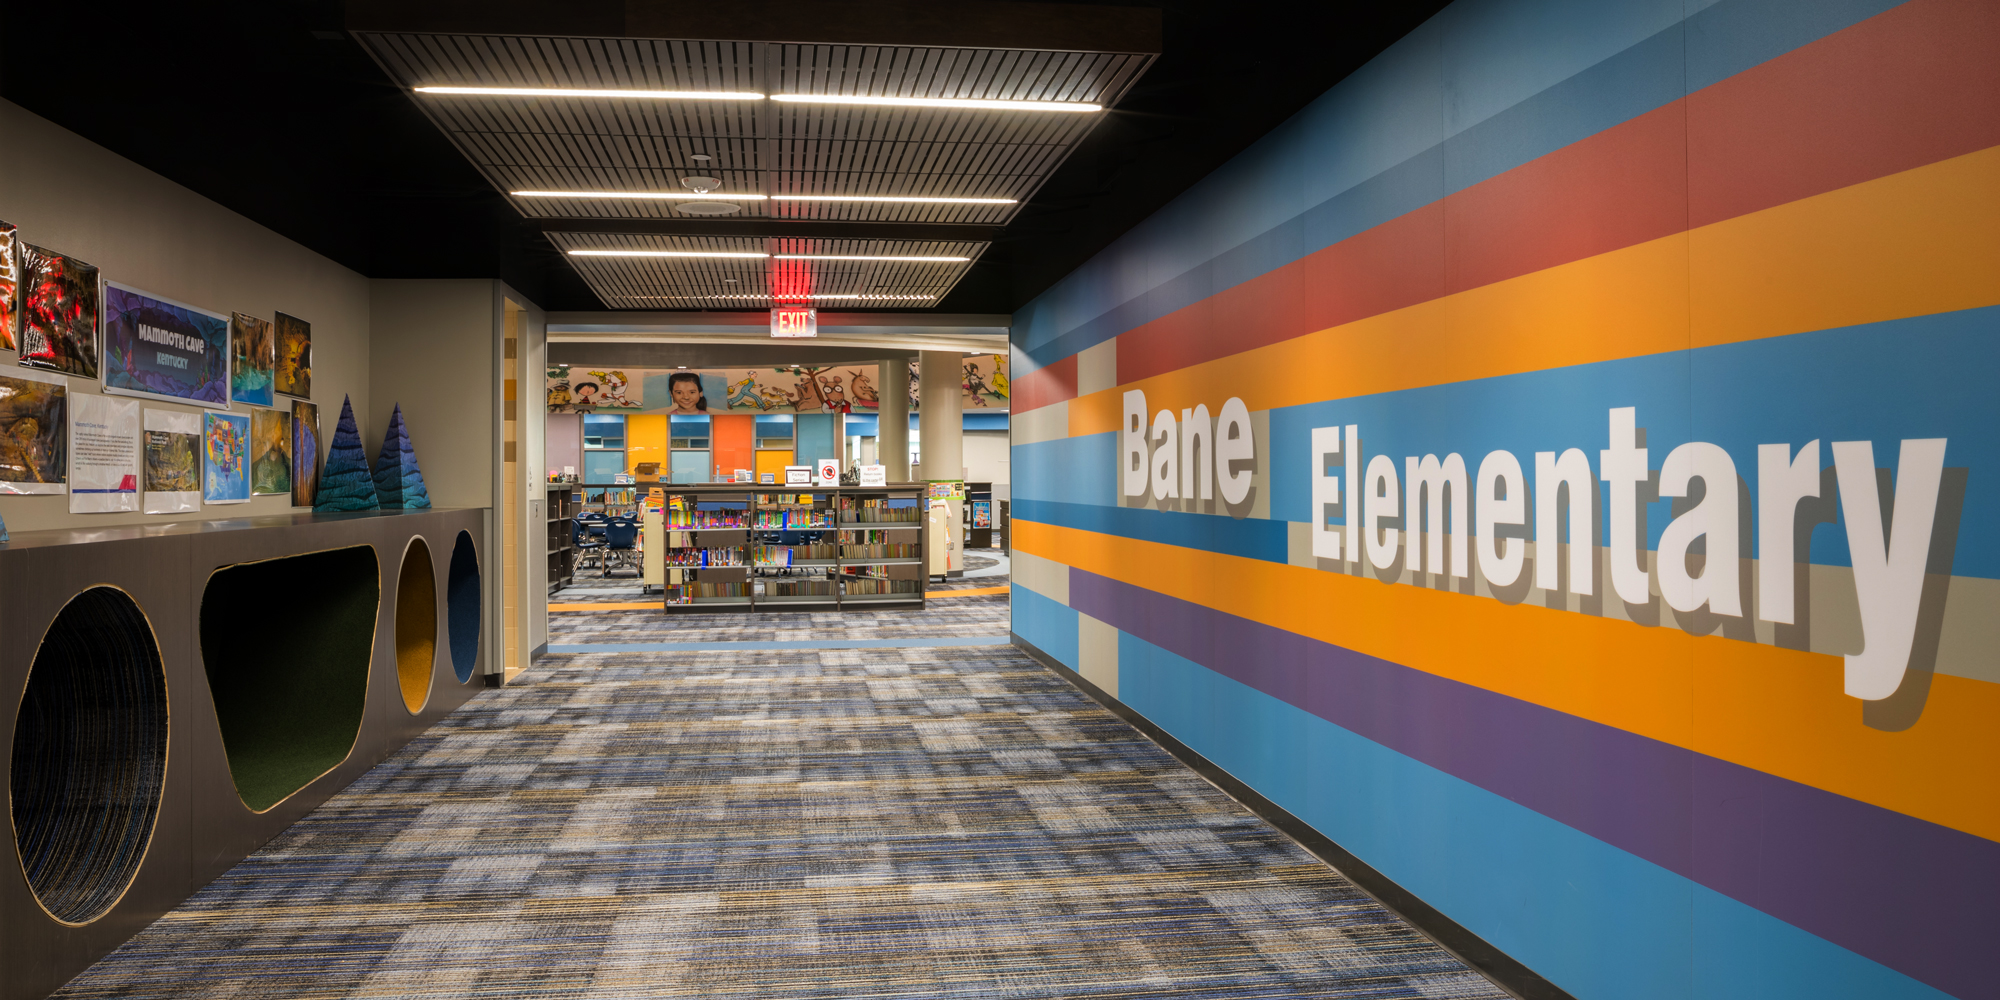 Library inside Bane Elementary School